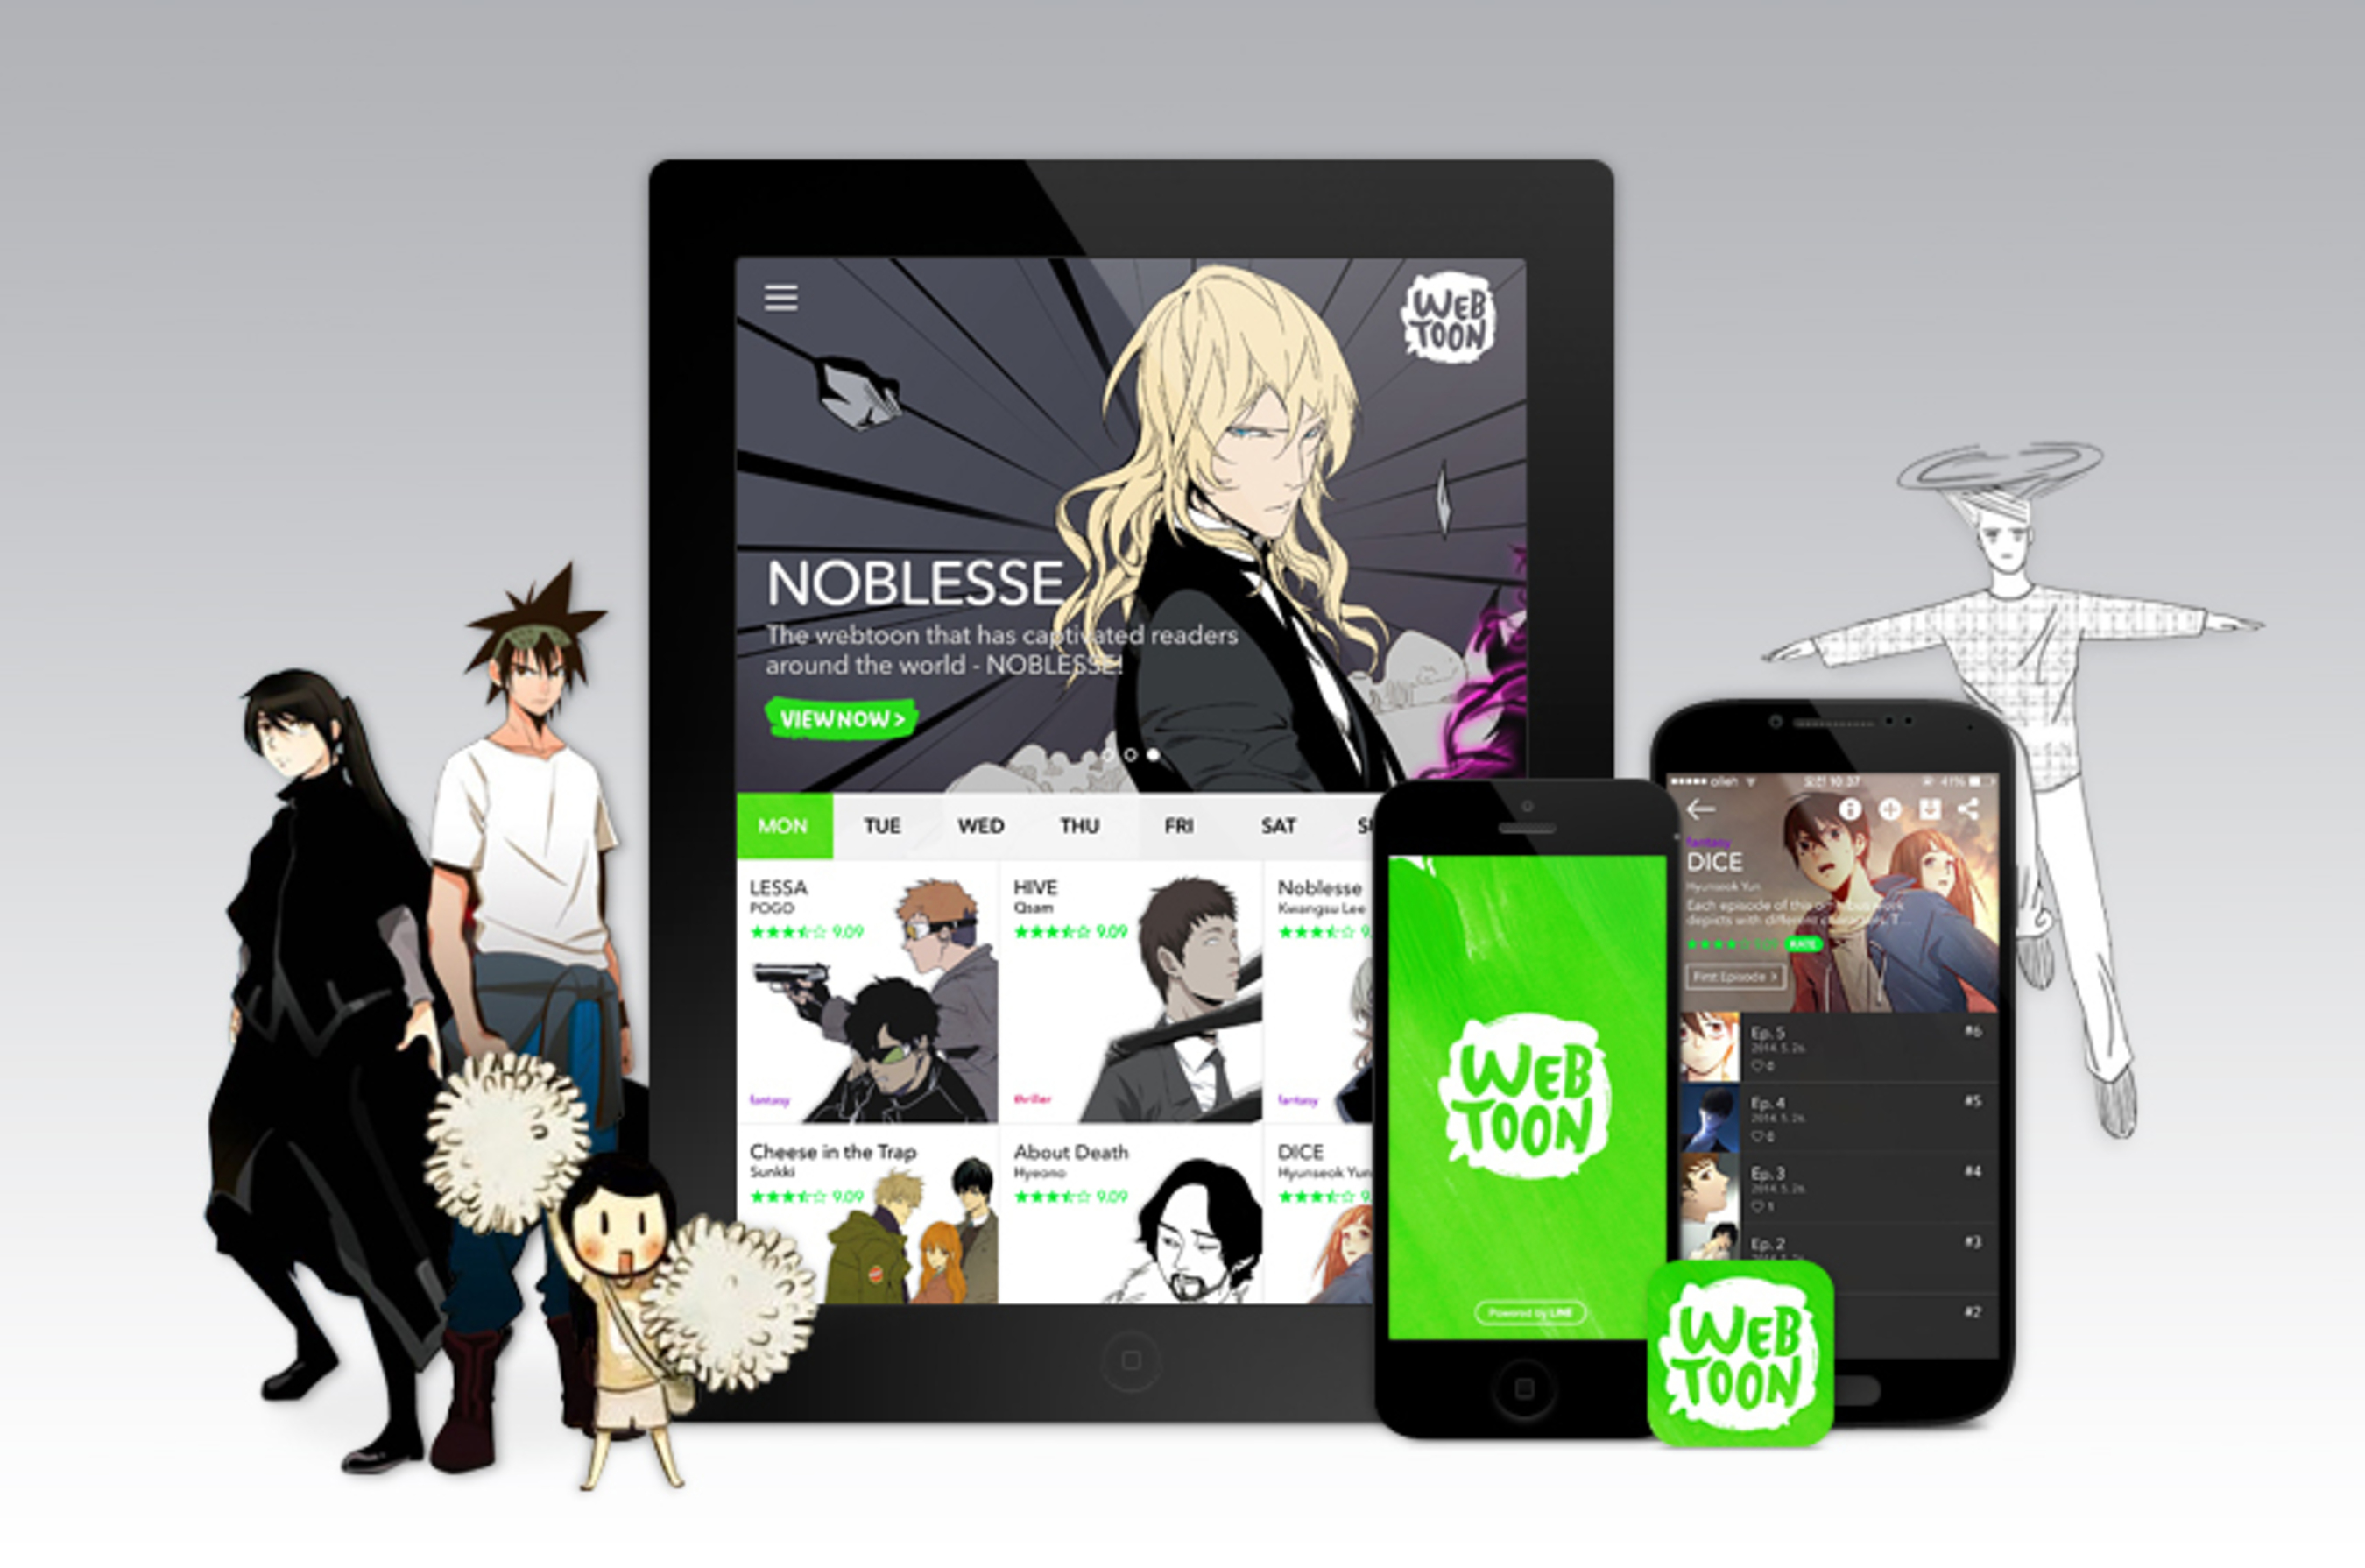 LINE Webtoon a new way to enjoy mobile comics (PRNewsFoto/LINE Webtoon)